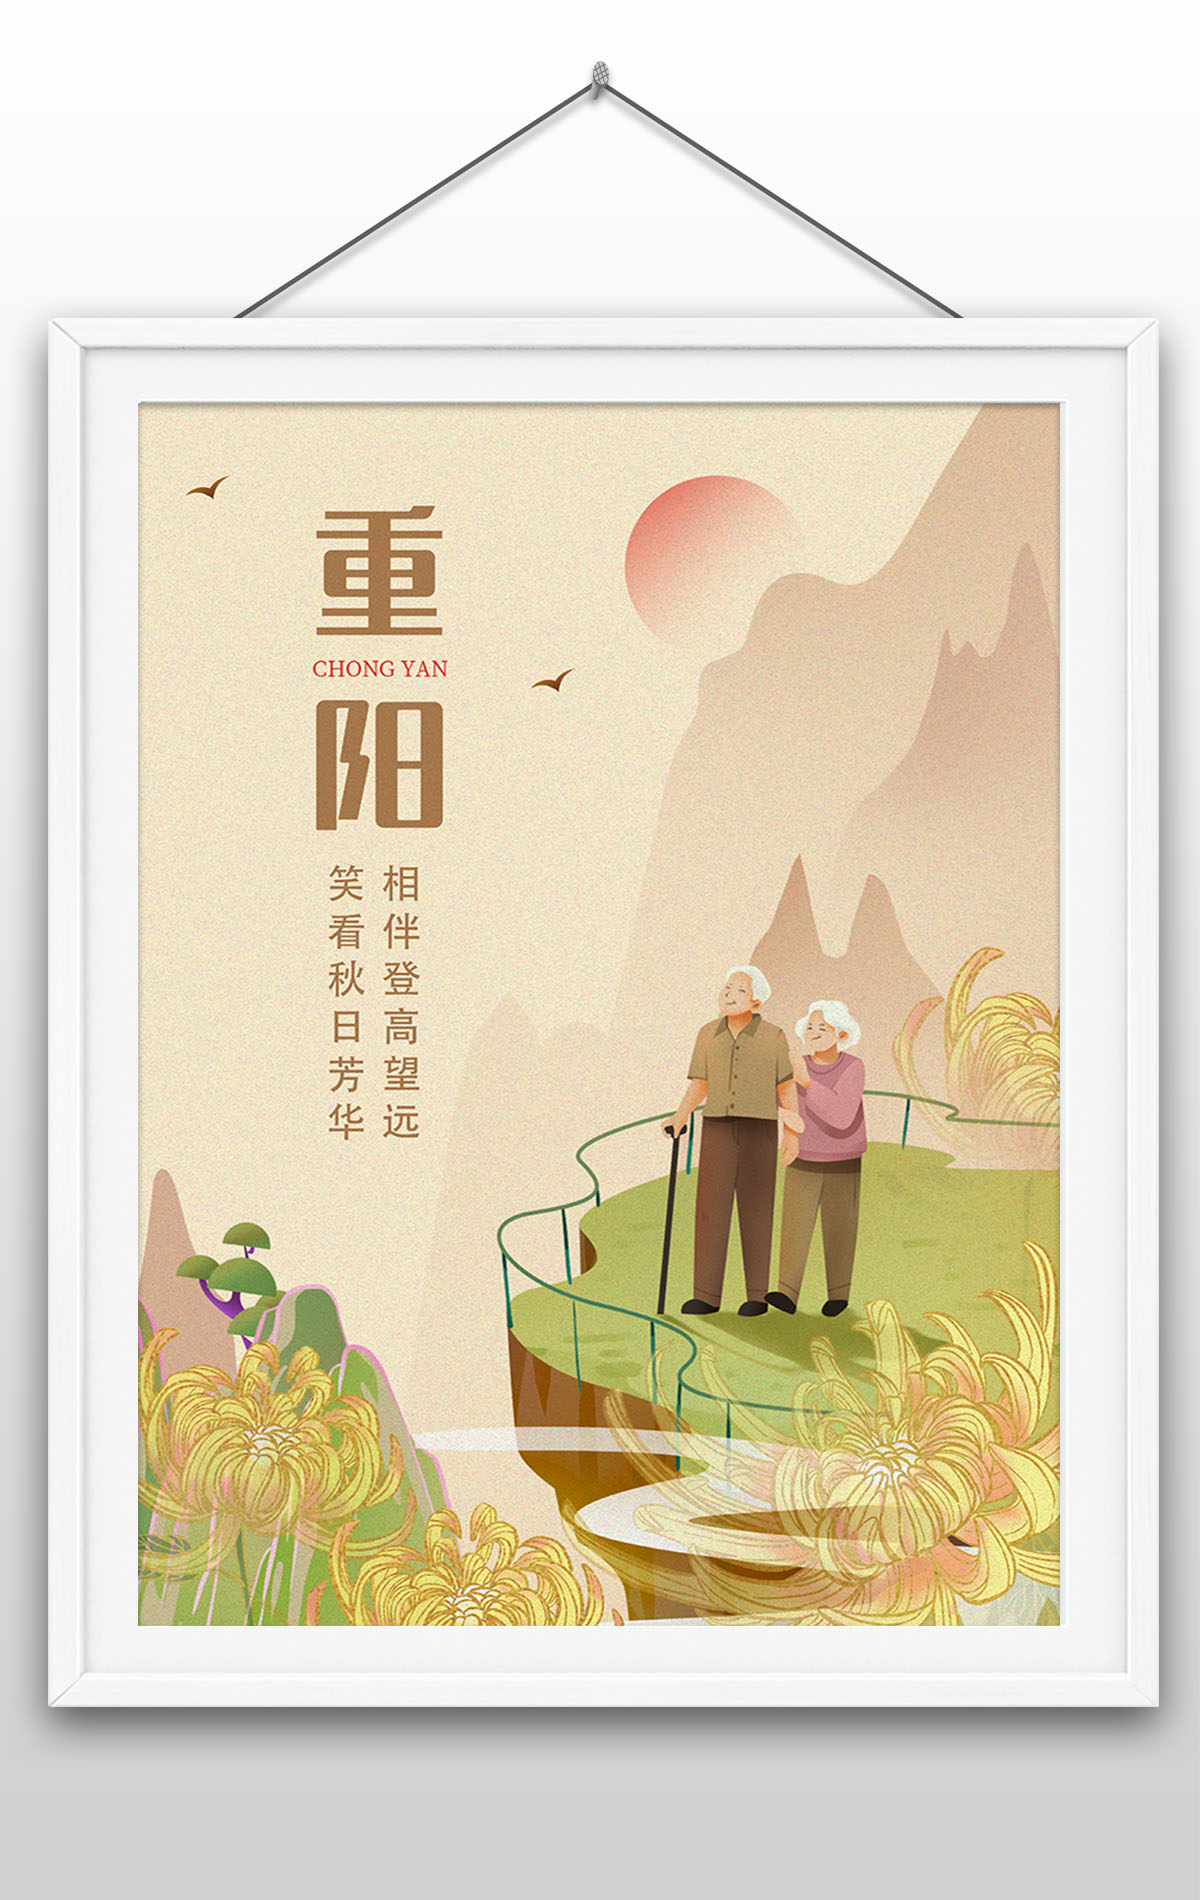 重阳佳节九月九日传统节日宣传海报设计